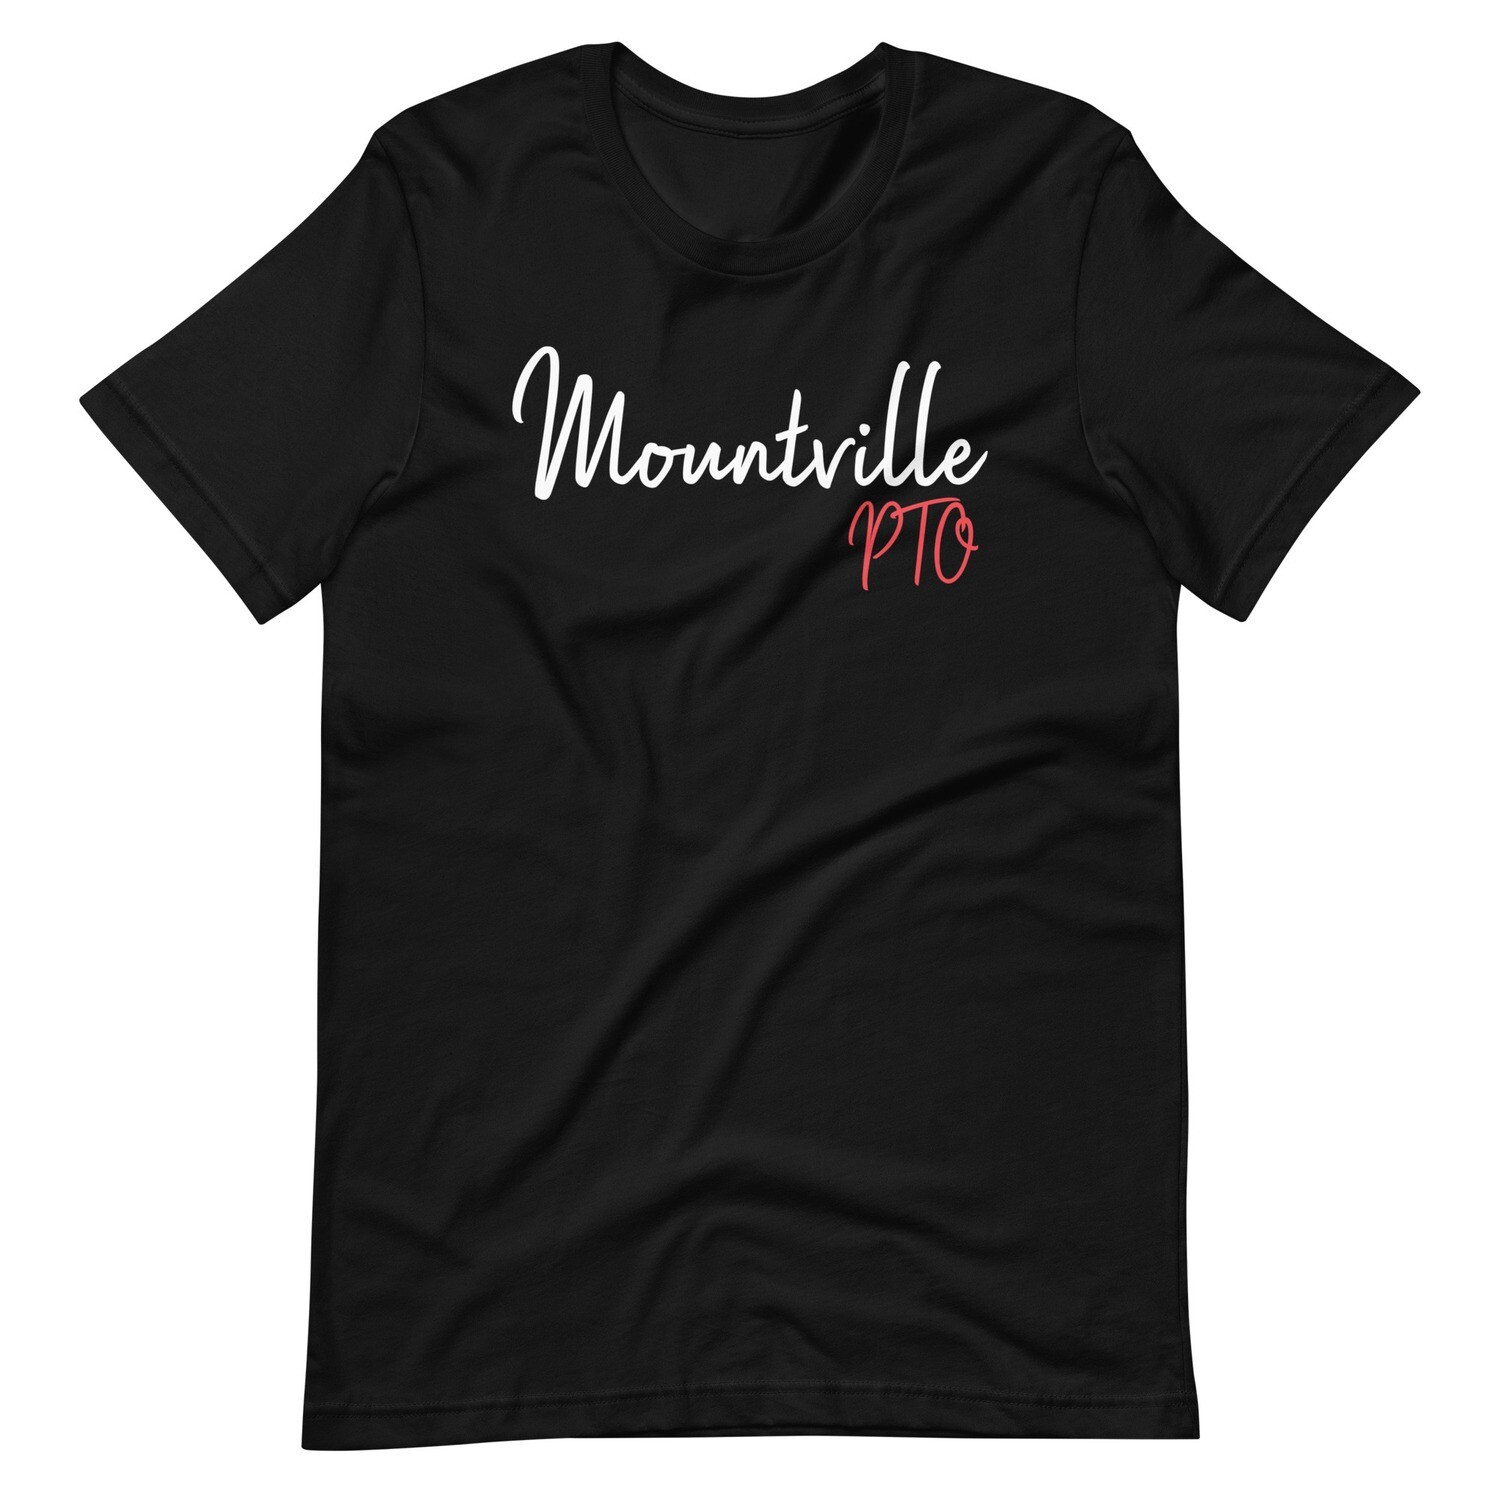 Mountville PTO Tee - Standard Fit